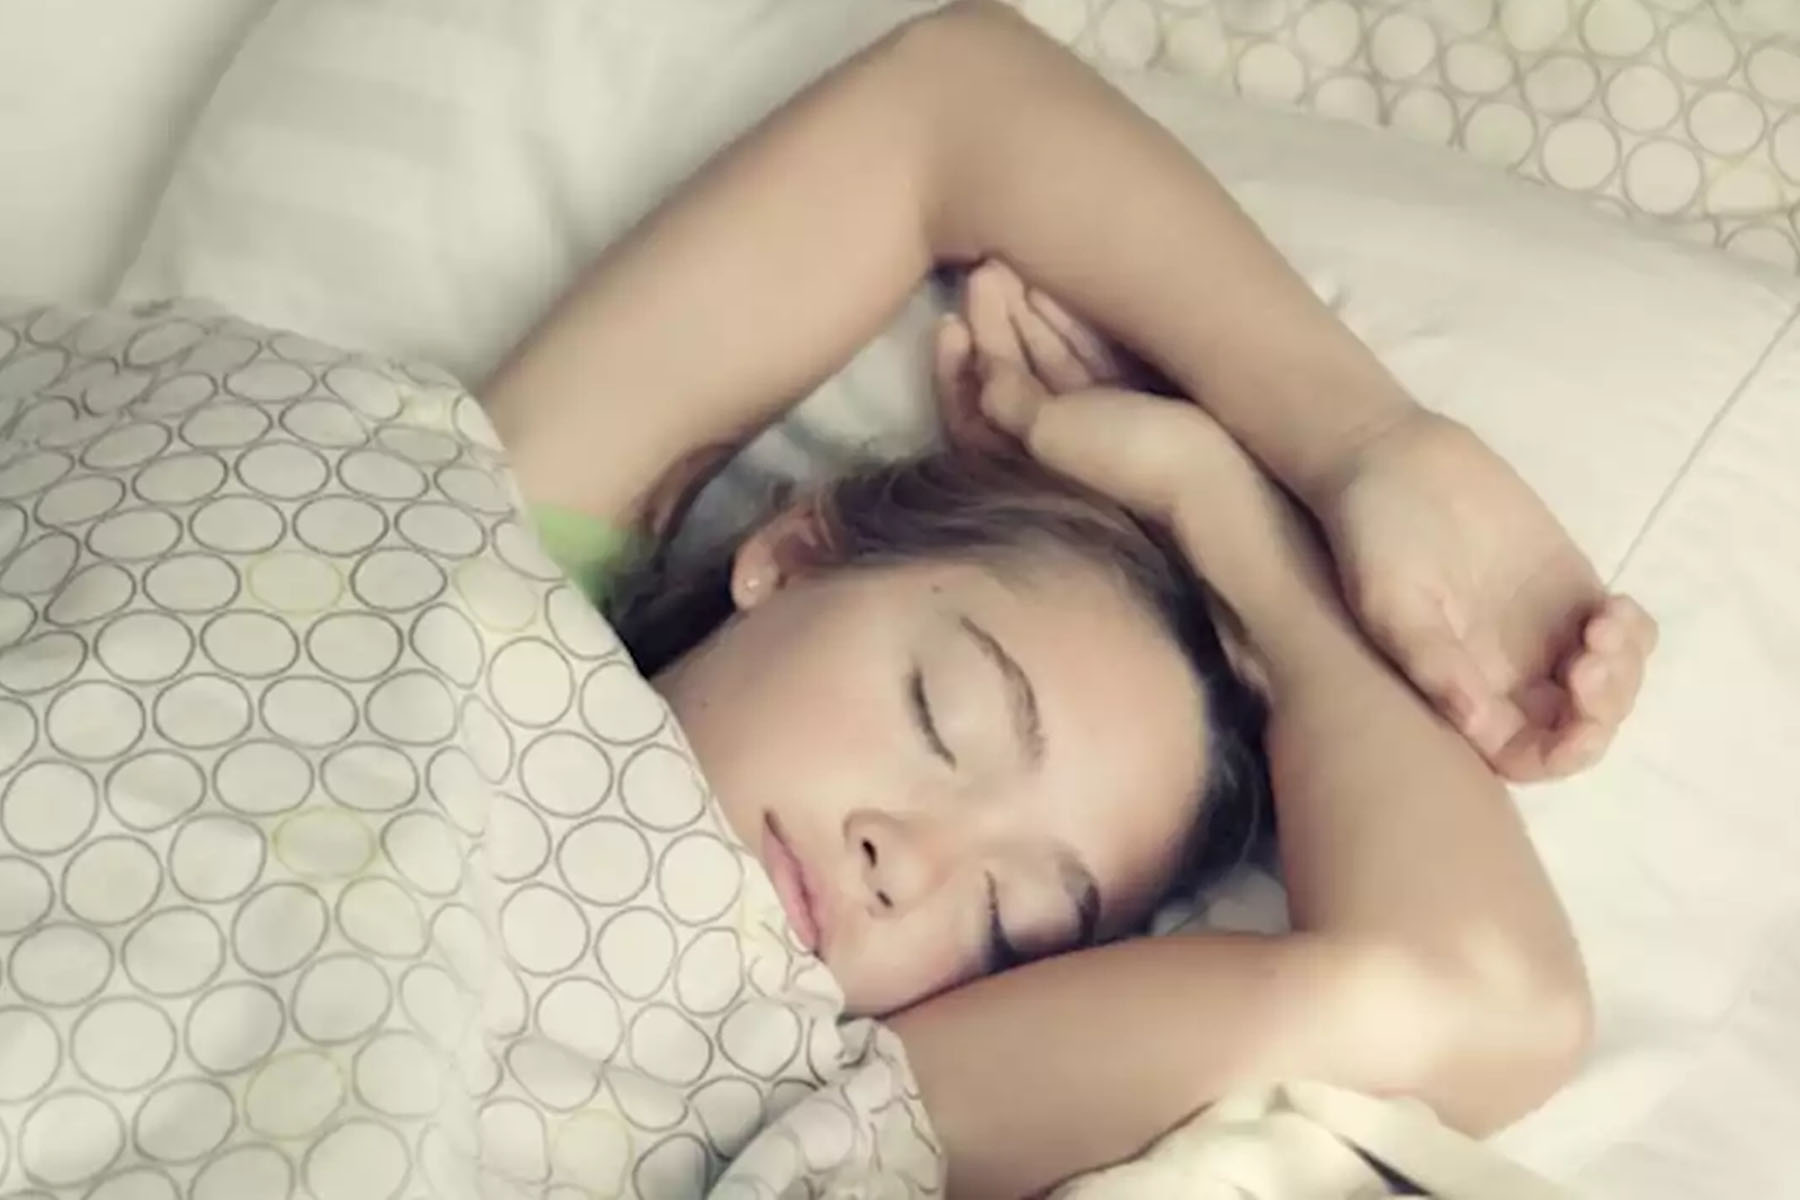 بازگشت به مدرسه : چگونه میتوان فرزندان خود را به روال عادی خواب واداشت